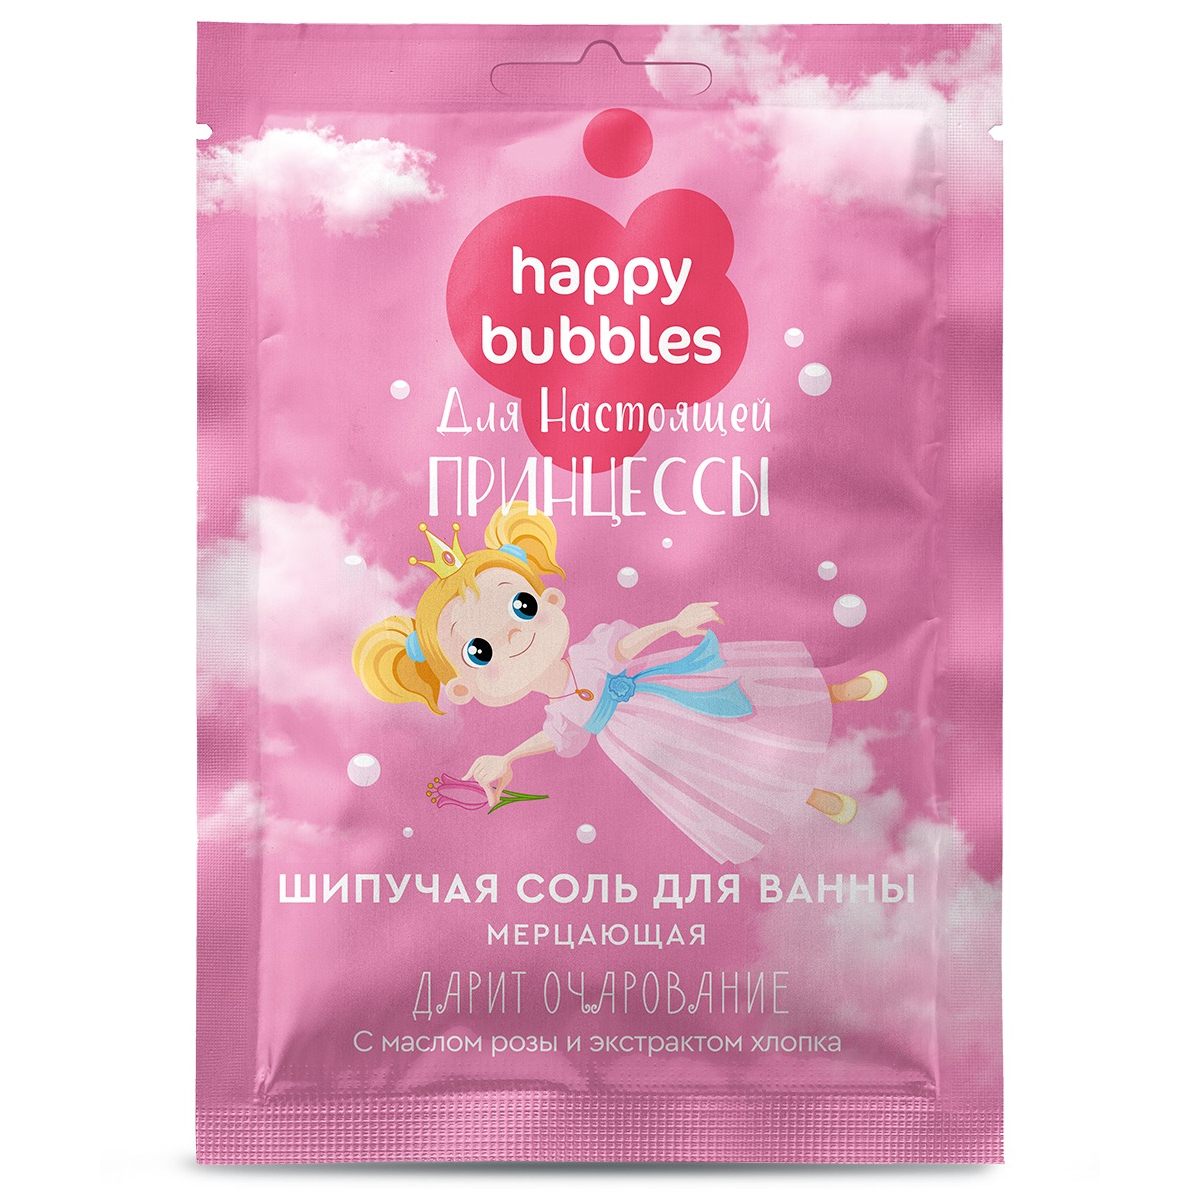 Соль для ванны Happy bubbles мерцание для настоящей принцессы 100г термомозаика принцессы с пинцетом